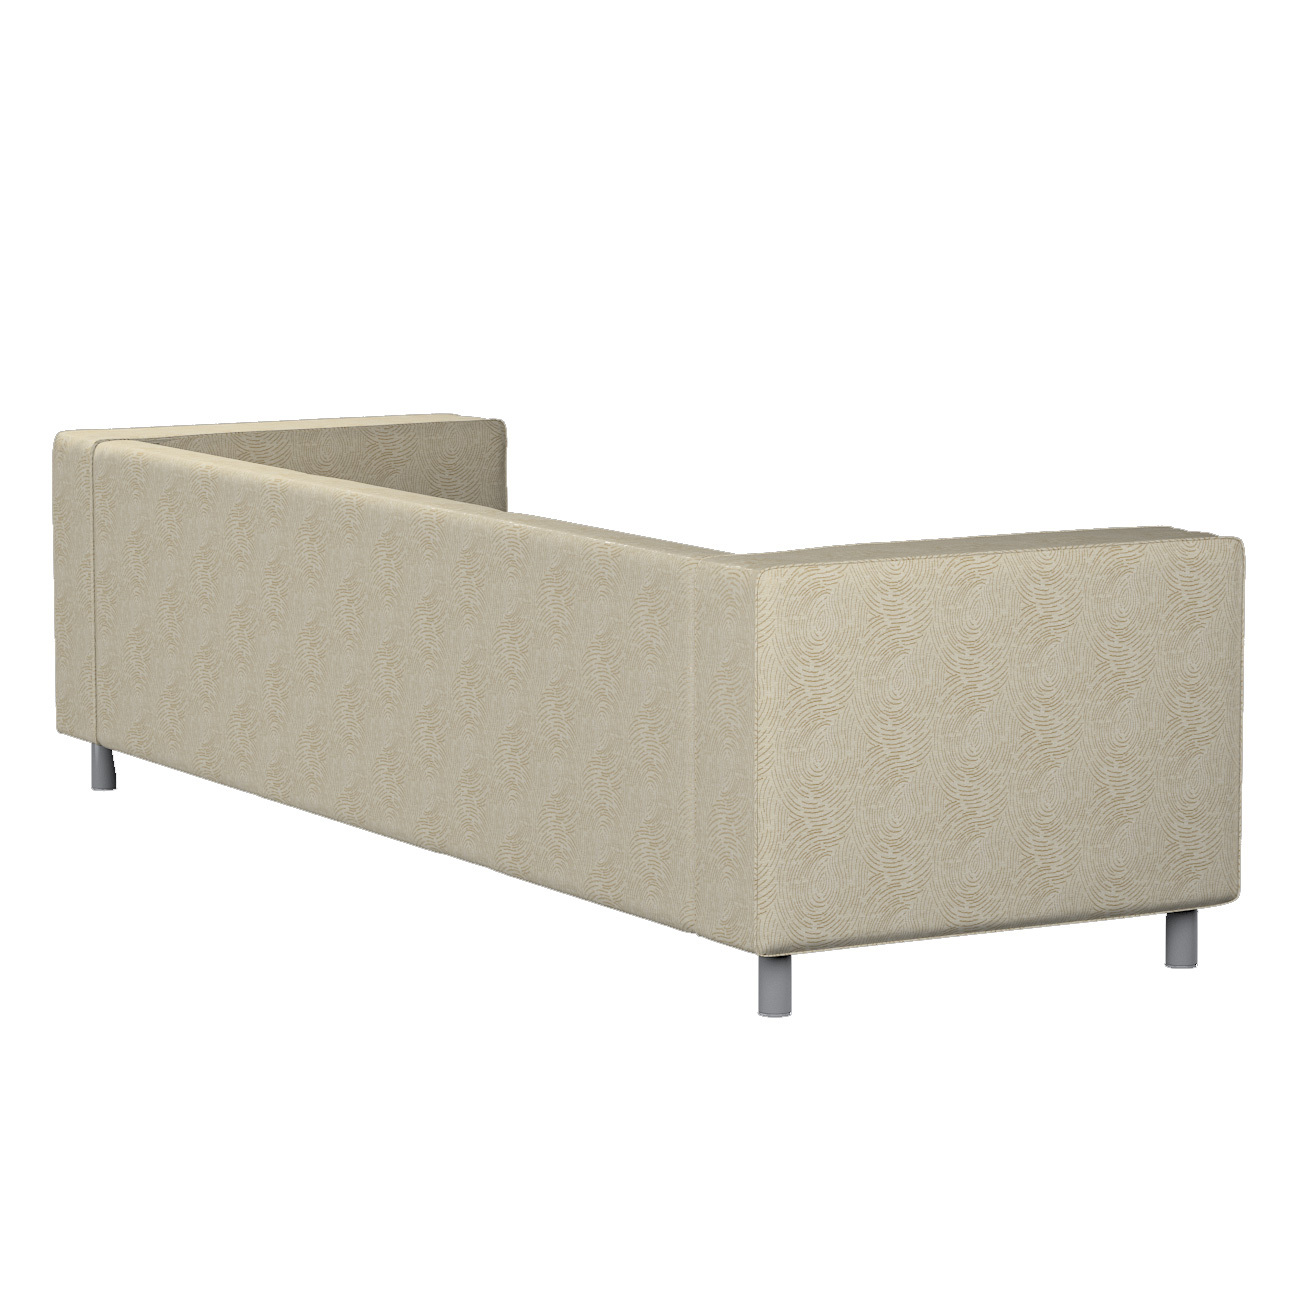 Bezug für Klippan 4-Sitzer Sofa, beige-golden, Bezug für Klippan 4-Sitzer, günstig online kaufen